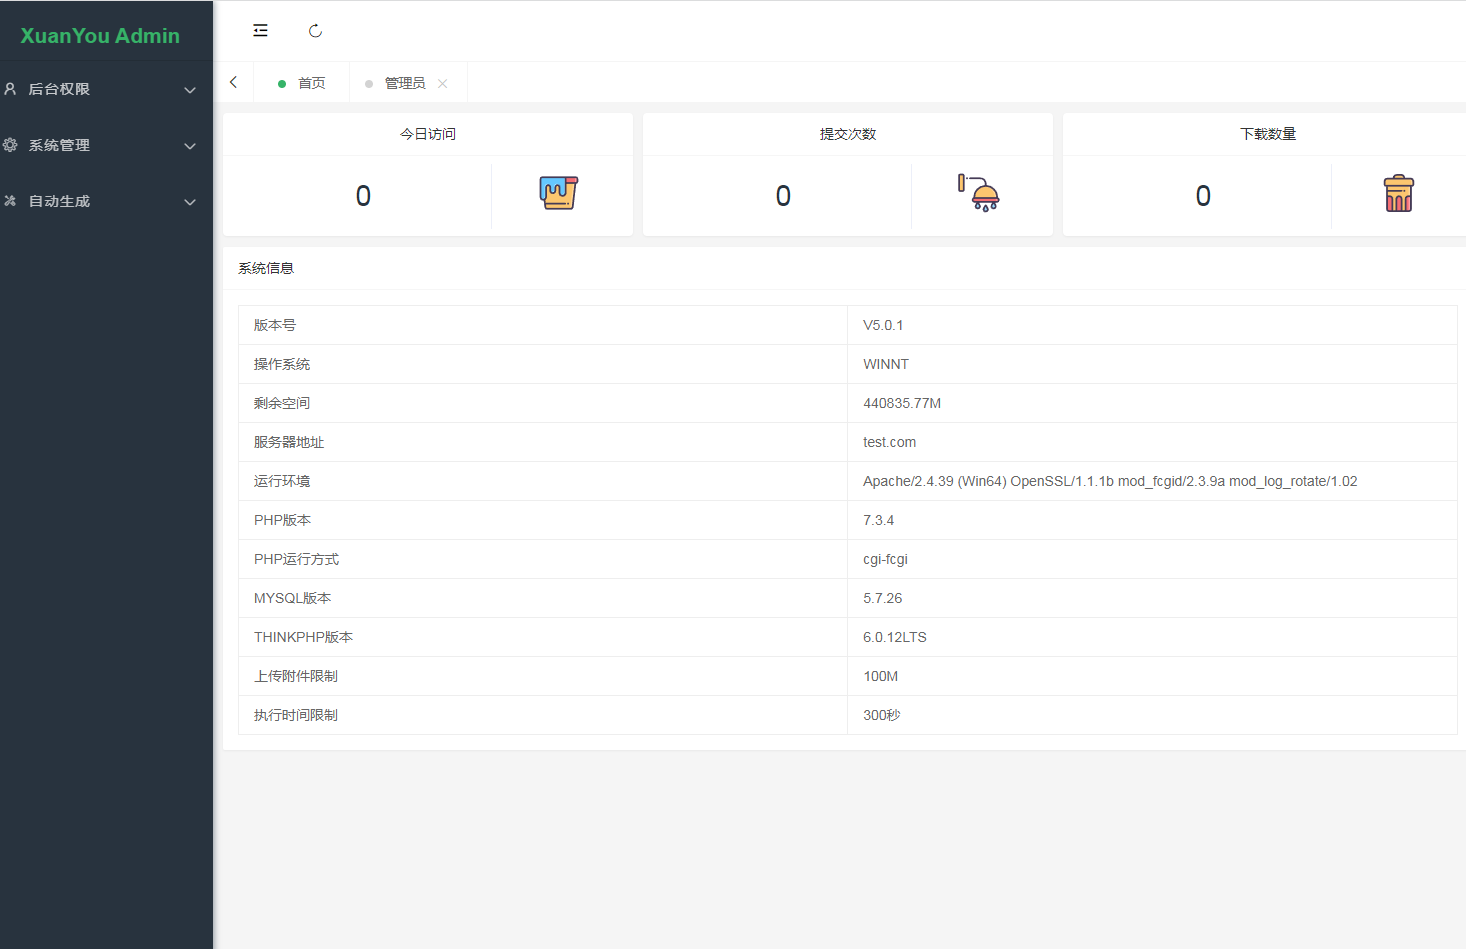 炫佑科技更新后台程序升级为XuanYou AdminV6版